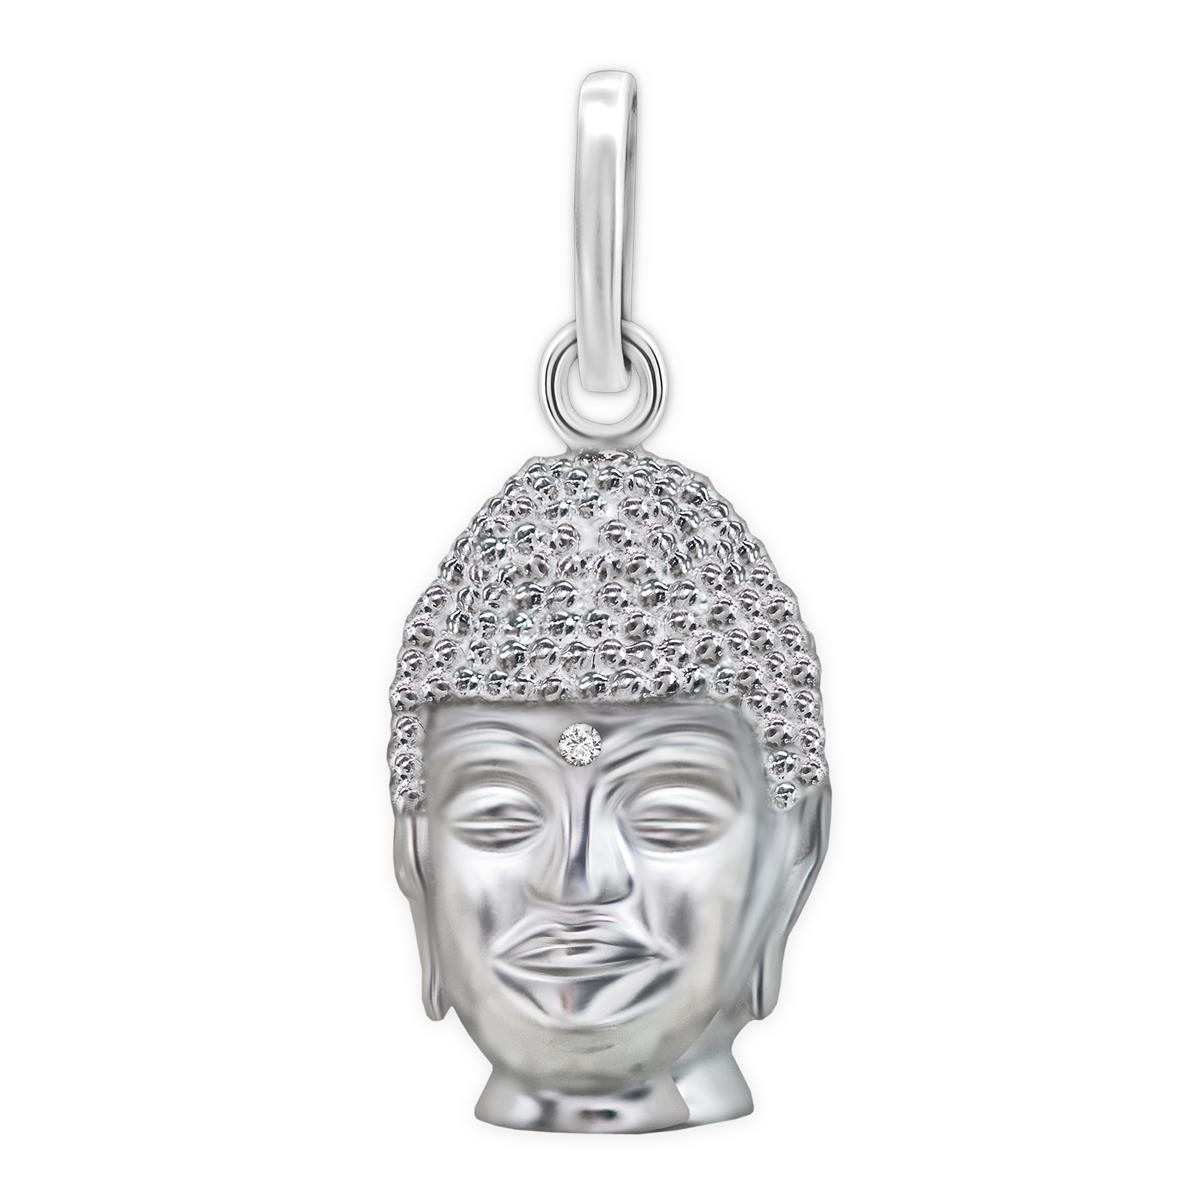 Silberner Buddha Kopf hochglänzend poliert Sterling Silber 925